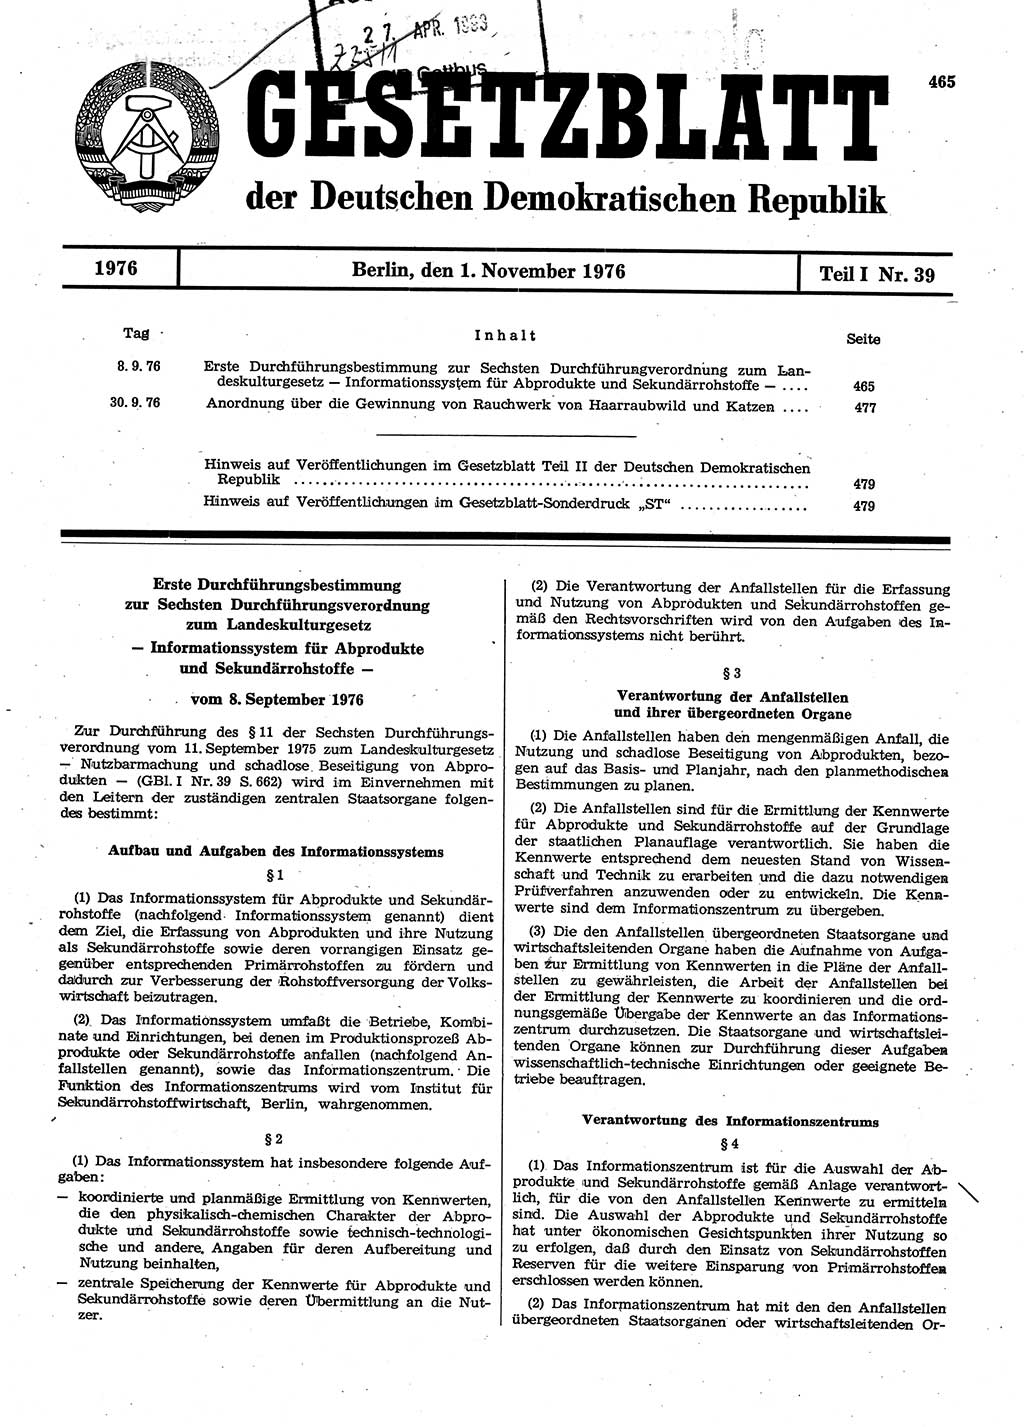 Gesetzblatt (GBl.) der Deutschen Demokratischen Republik (DDR) Teil Ⅰ 1976, Seite 465 (GBl. DDR Ⅰ 1976, S. 465)